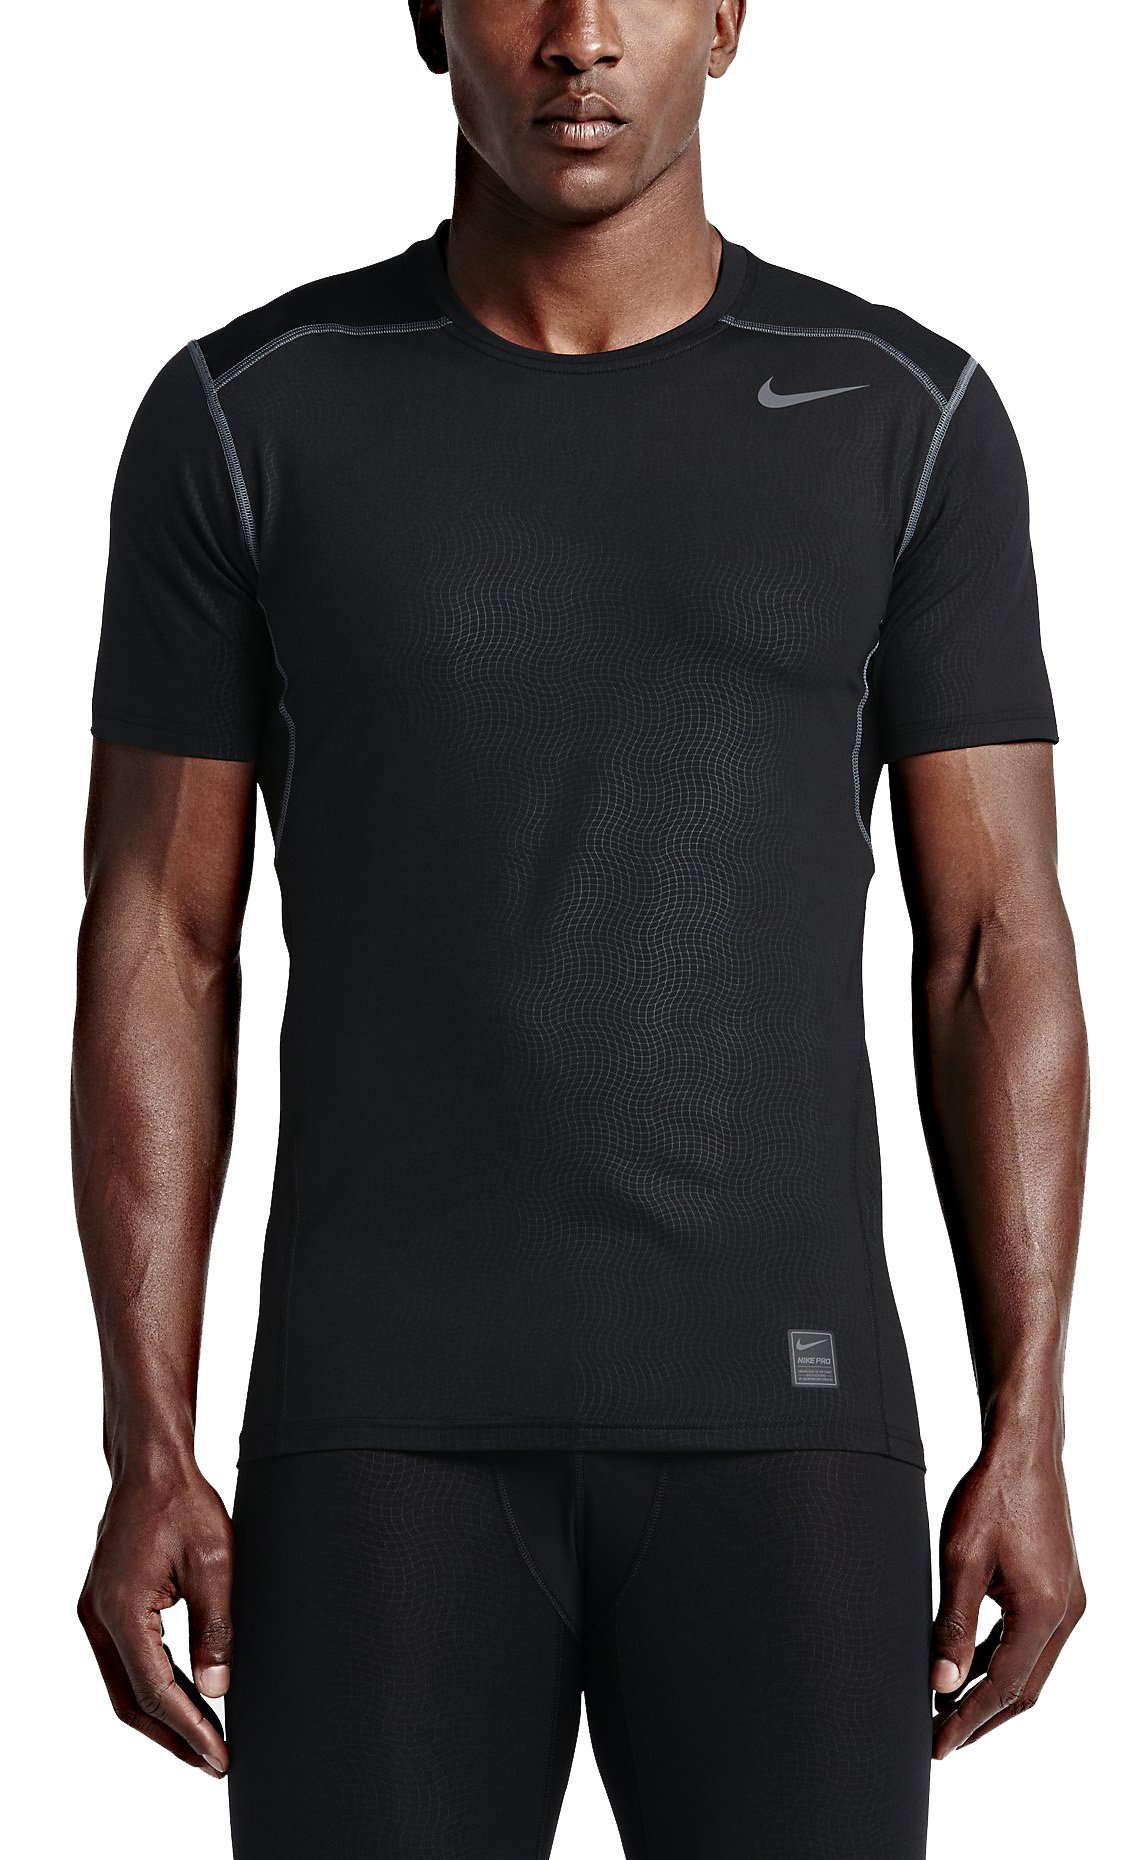 Kompresní tričko Nike Hypercool Fitted